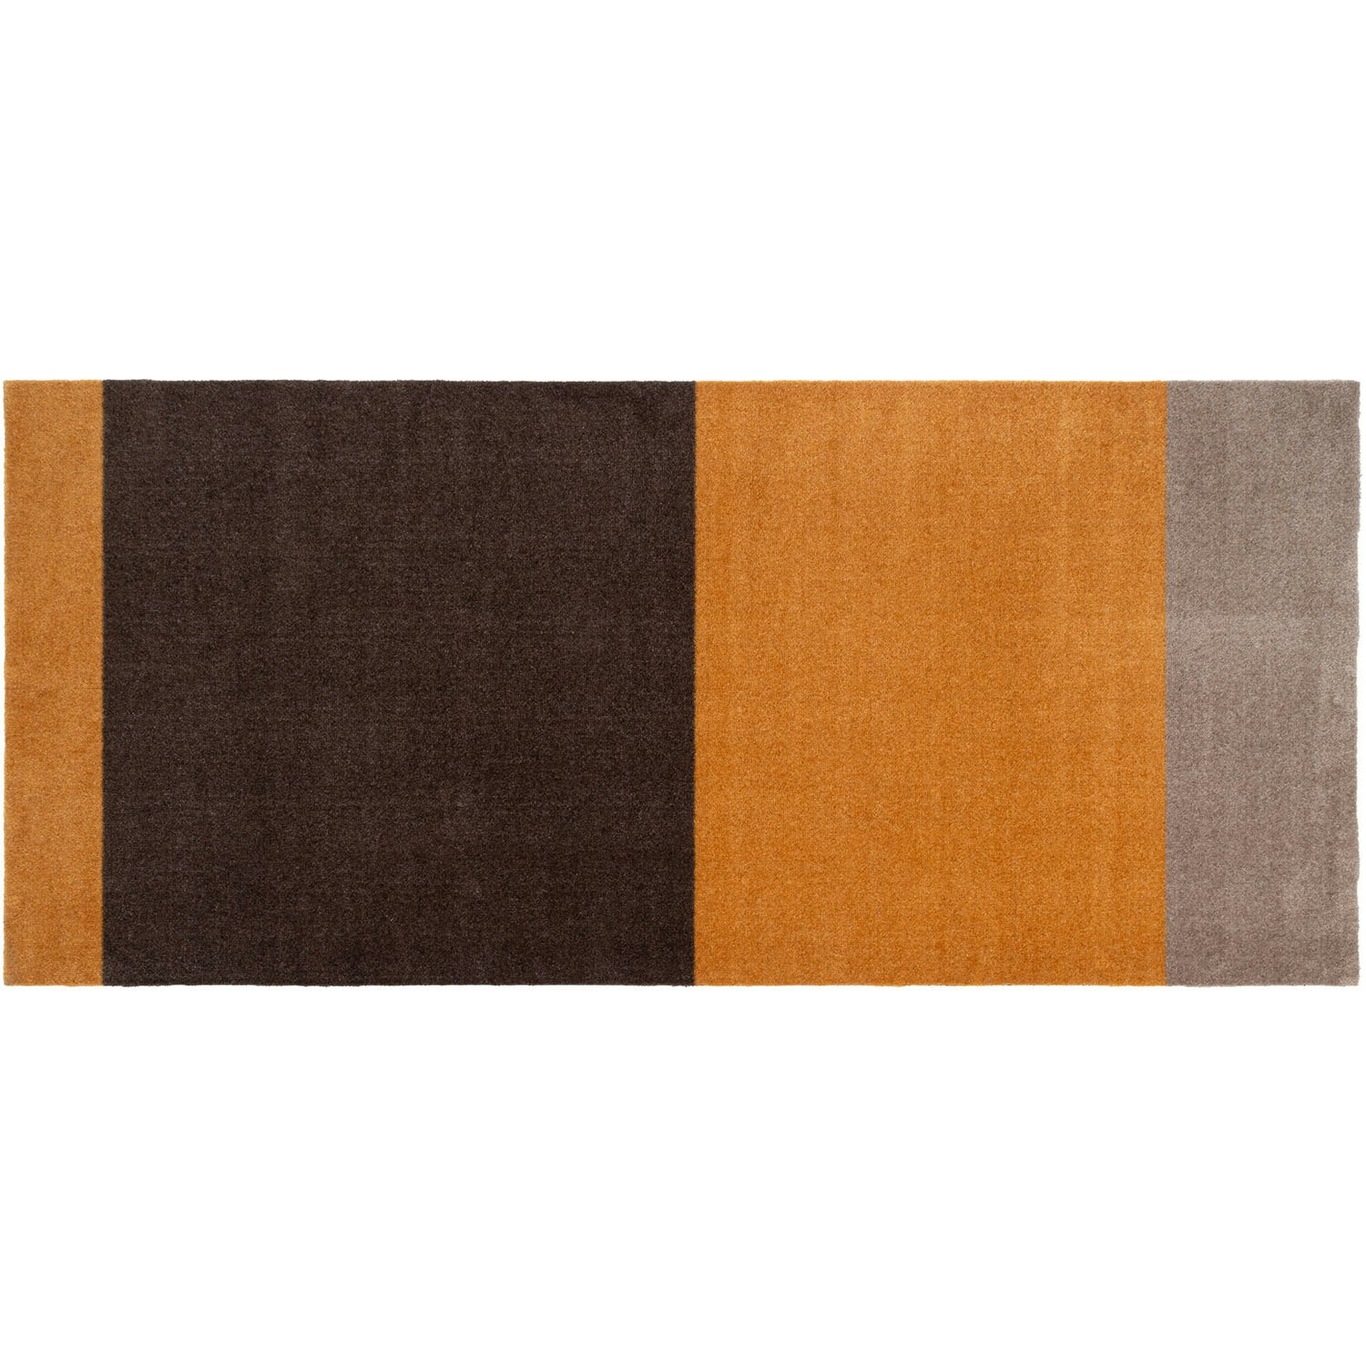 Stripes Vloerkleed Dijon/Bruin, 90x200 cm